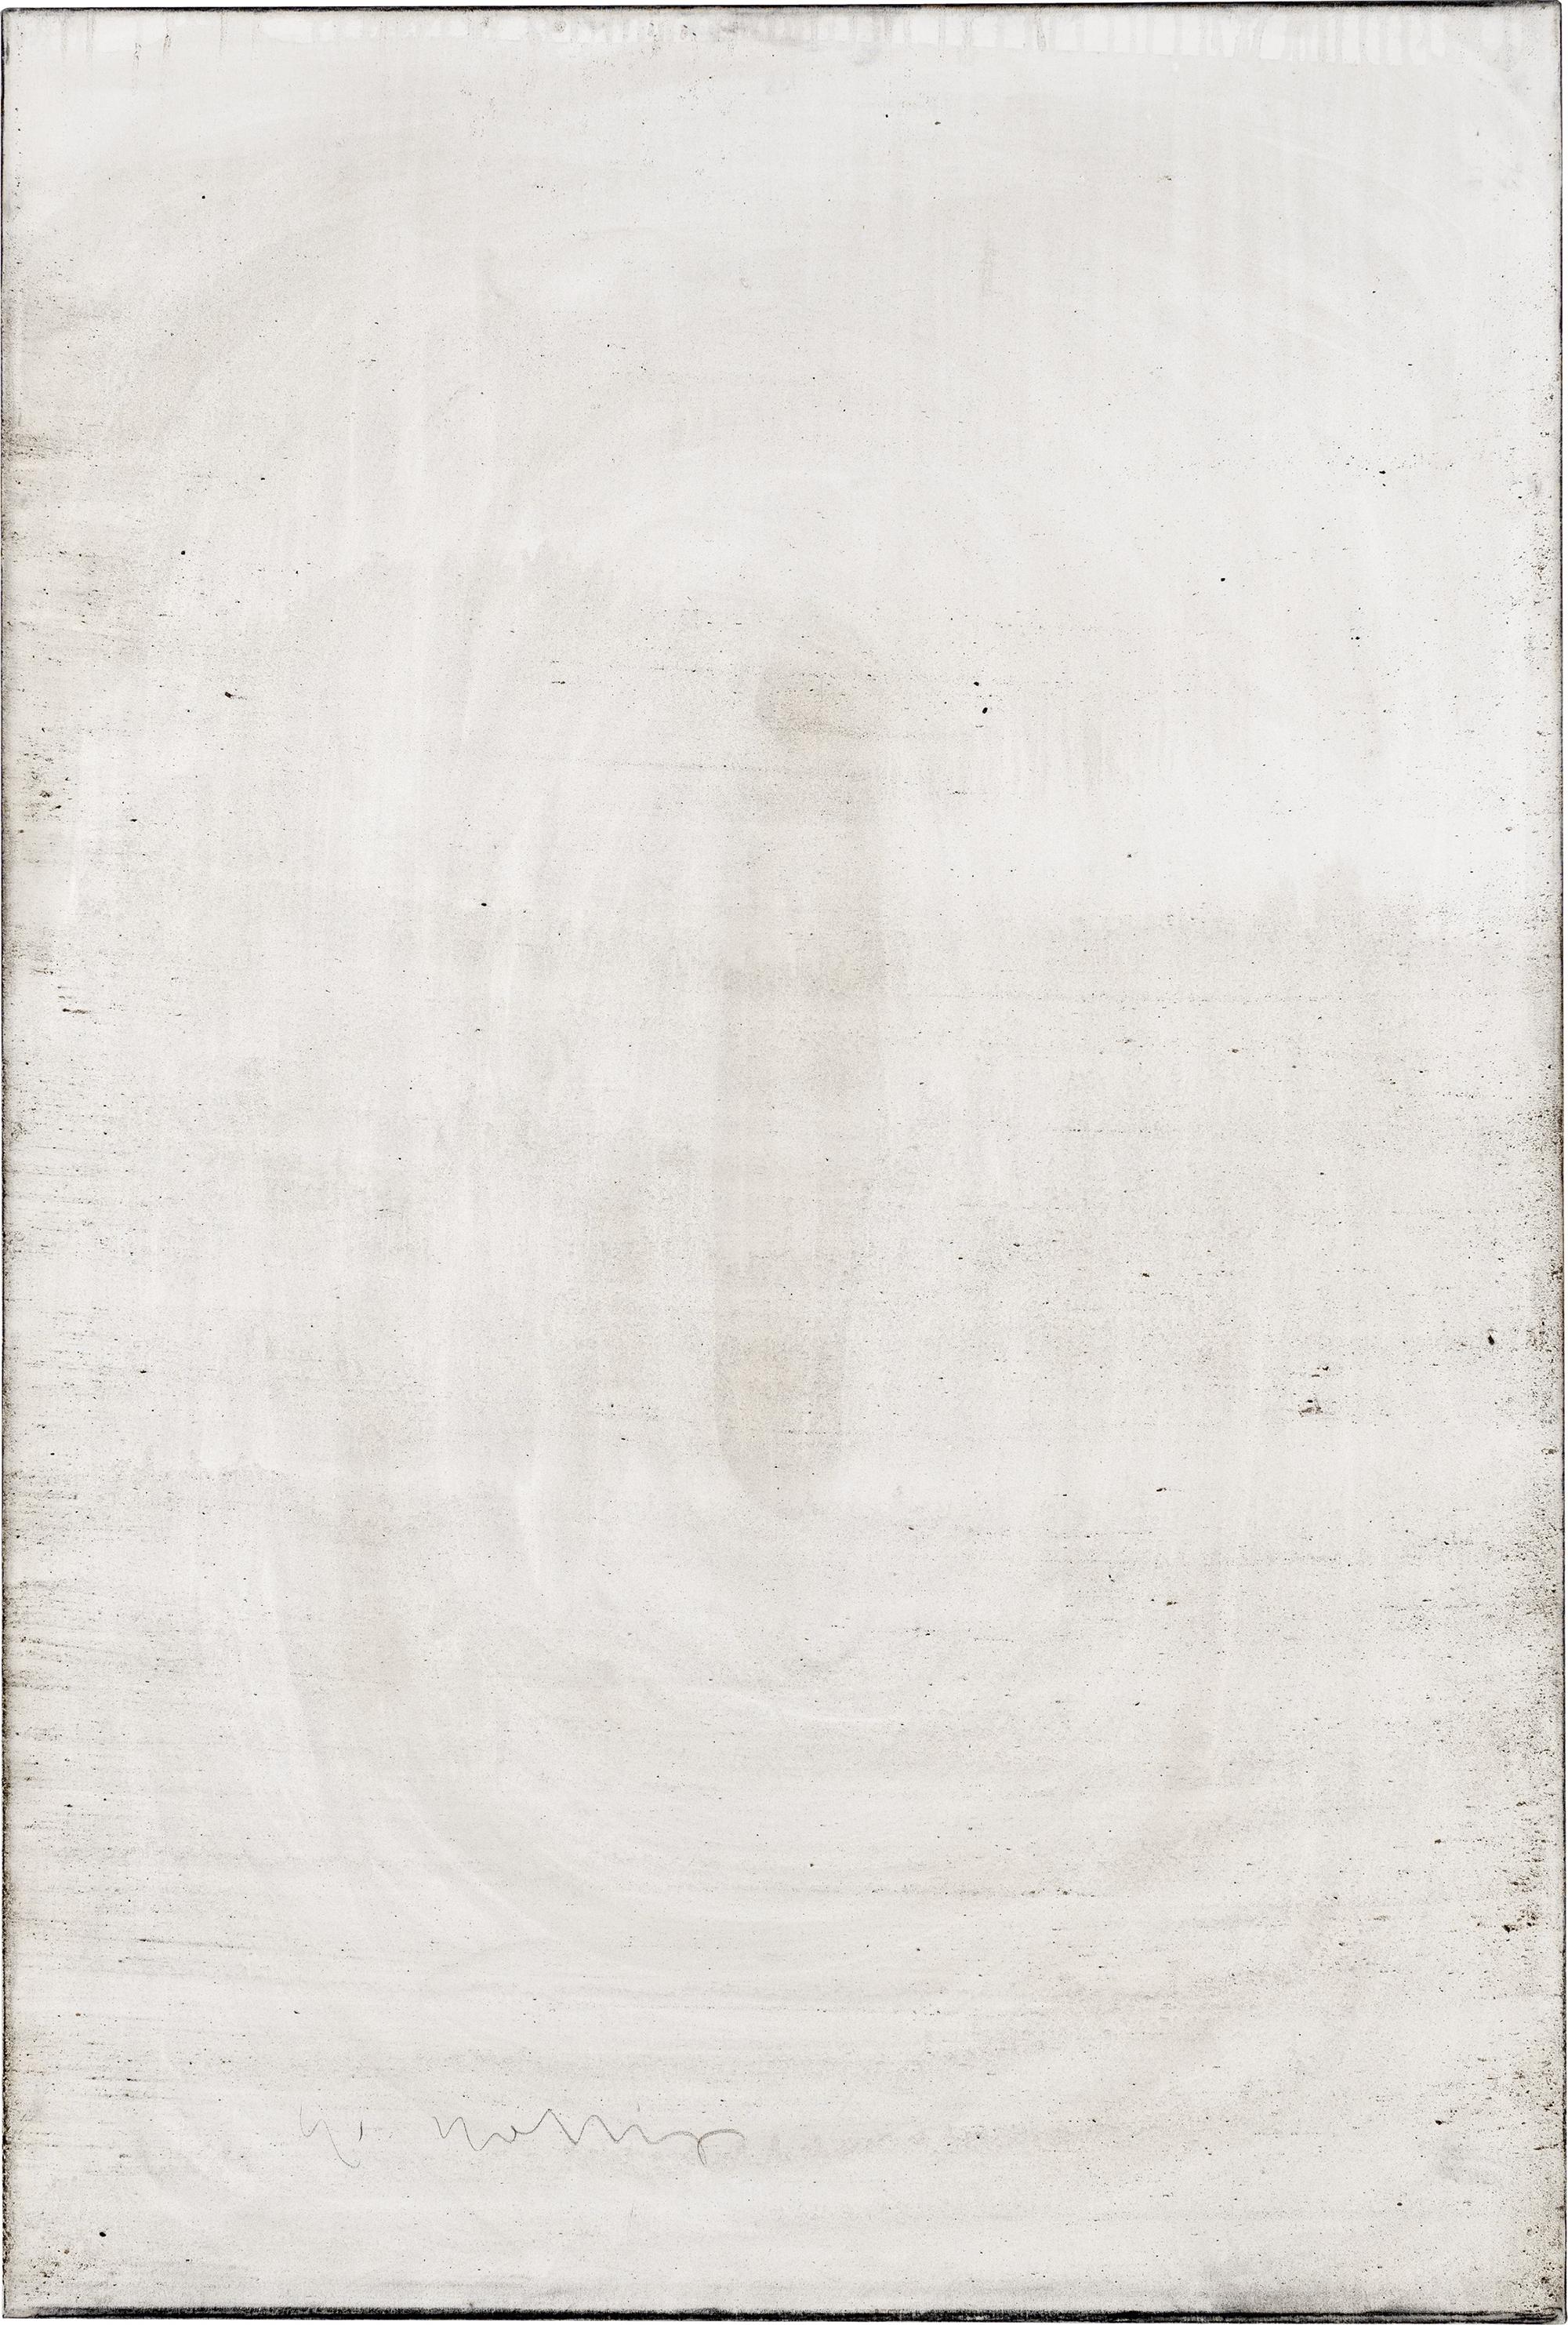 Ashes to Ashes 2 // Asche in Eitempera auf Leinwand // 150 x 100 cm // 2011